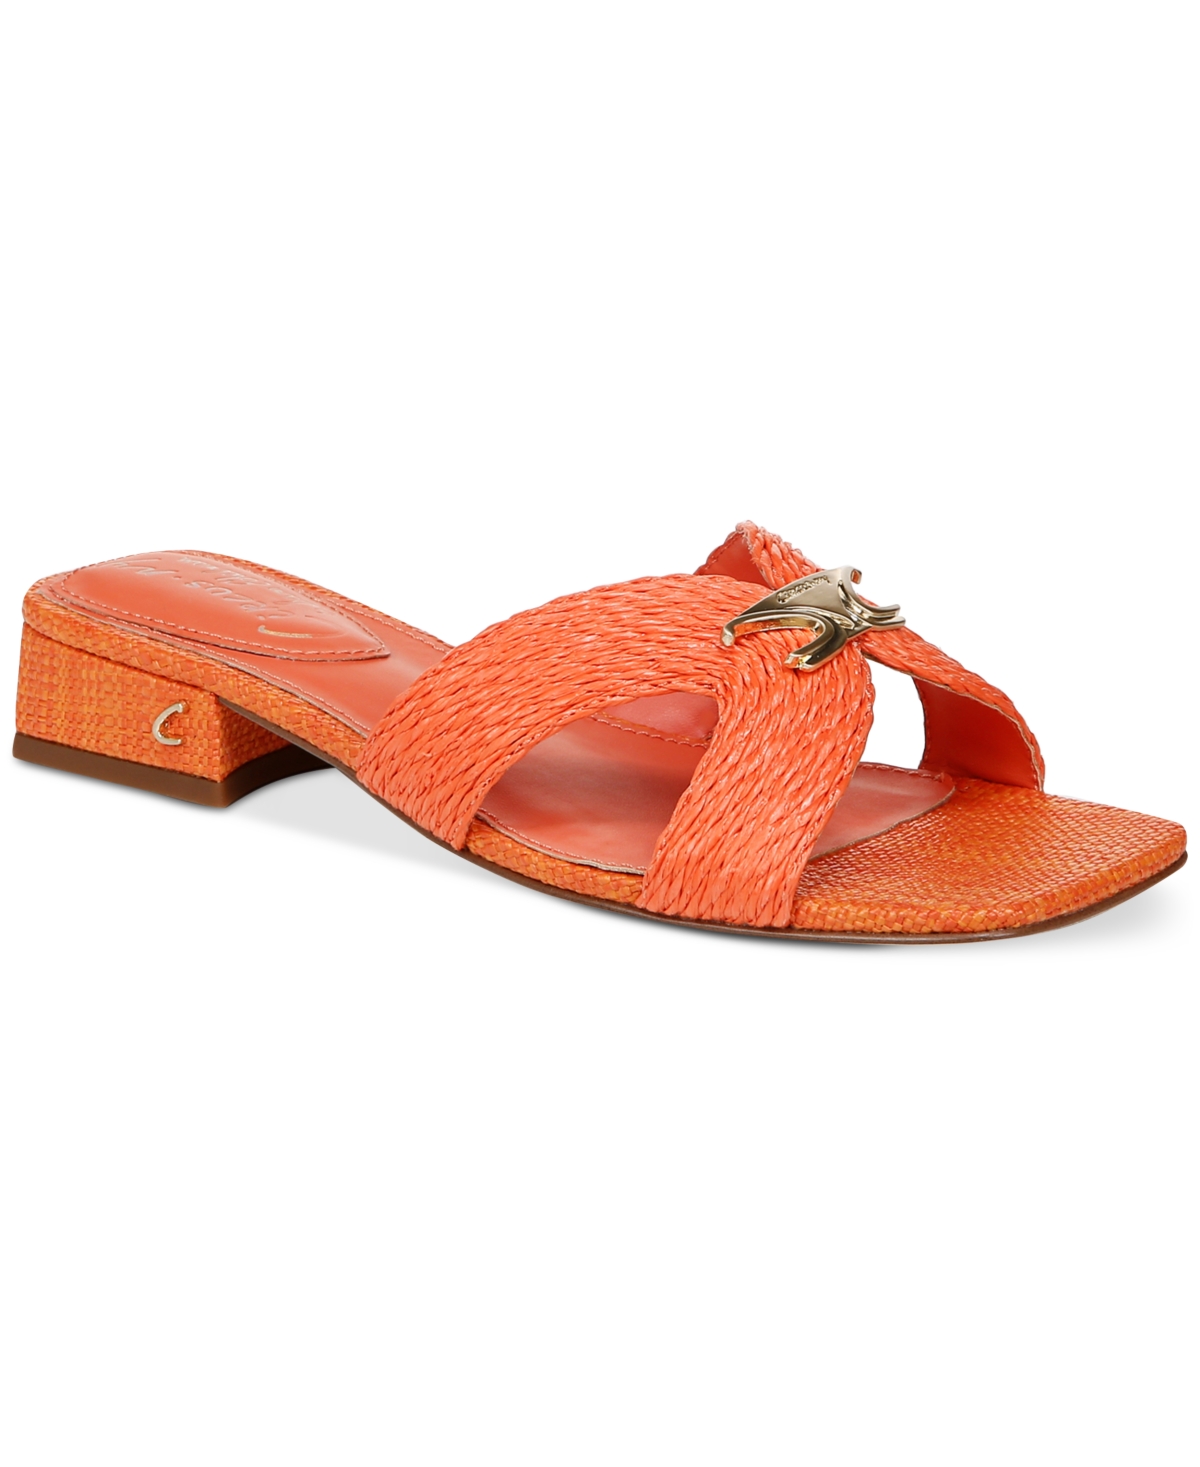 Women's Joella Weave Block-Heel Slide Sandals - Cognac Multi Raffia